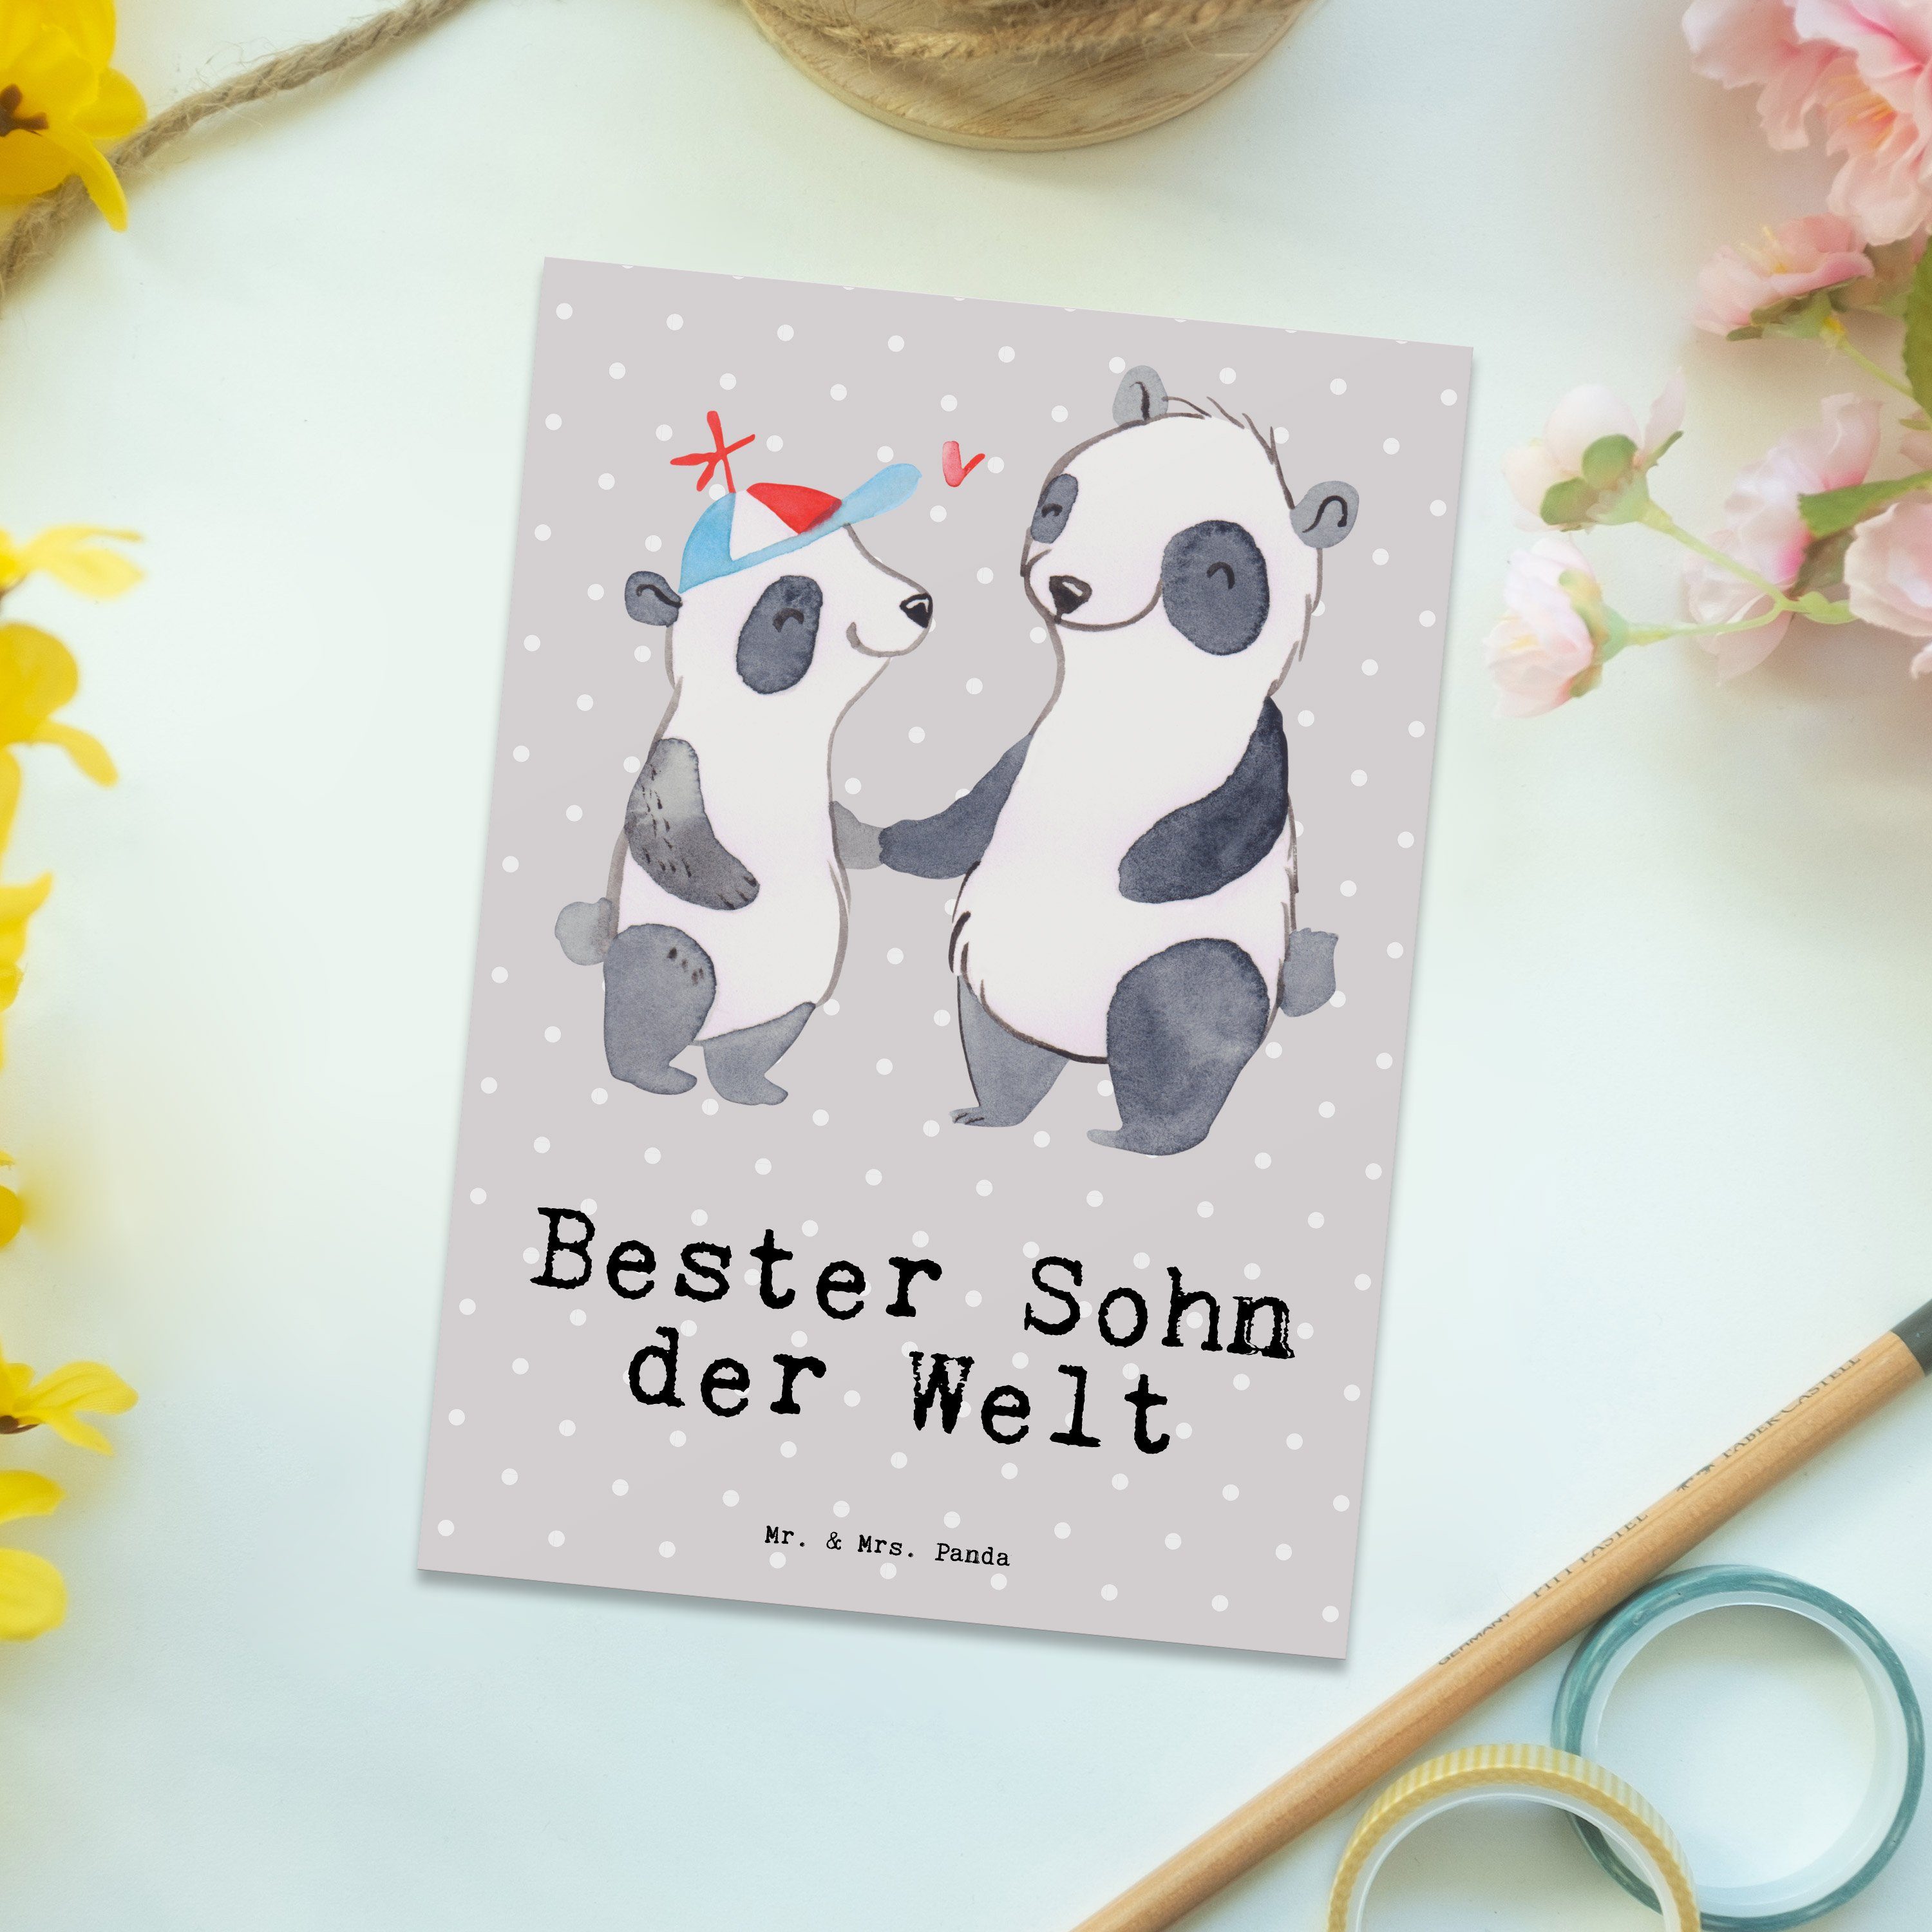 Mr. & der Sohn Bester Panda Welt Postkarte Ein Panda - Grau Mrs. Pastell Geburtstag, Geschenk, 